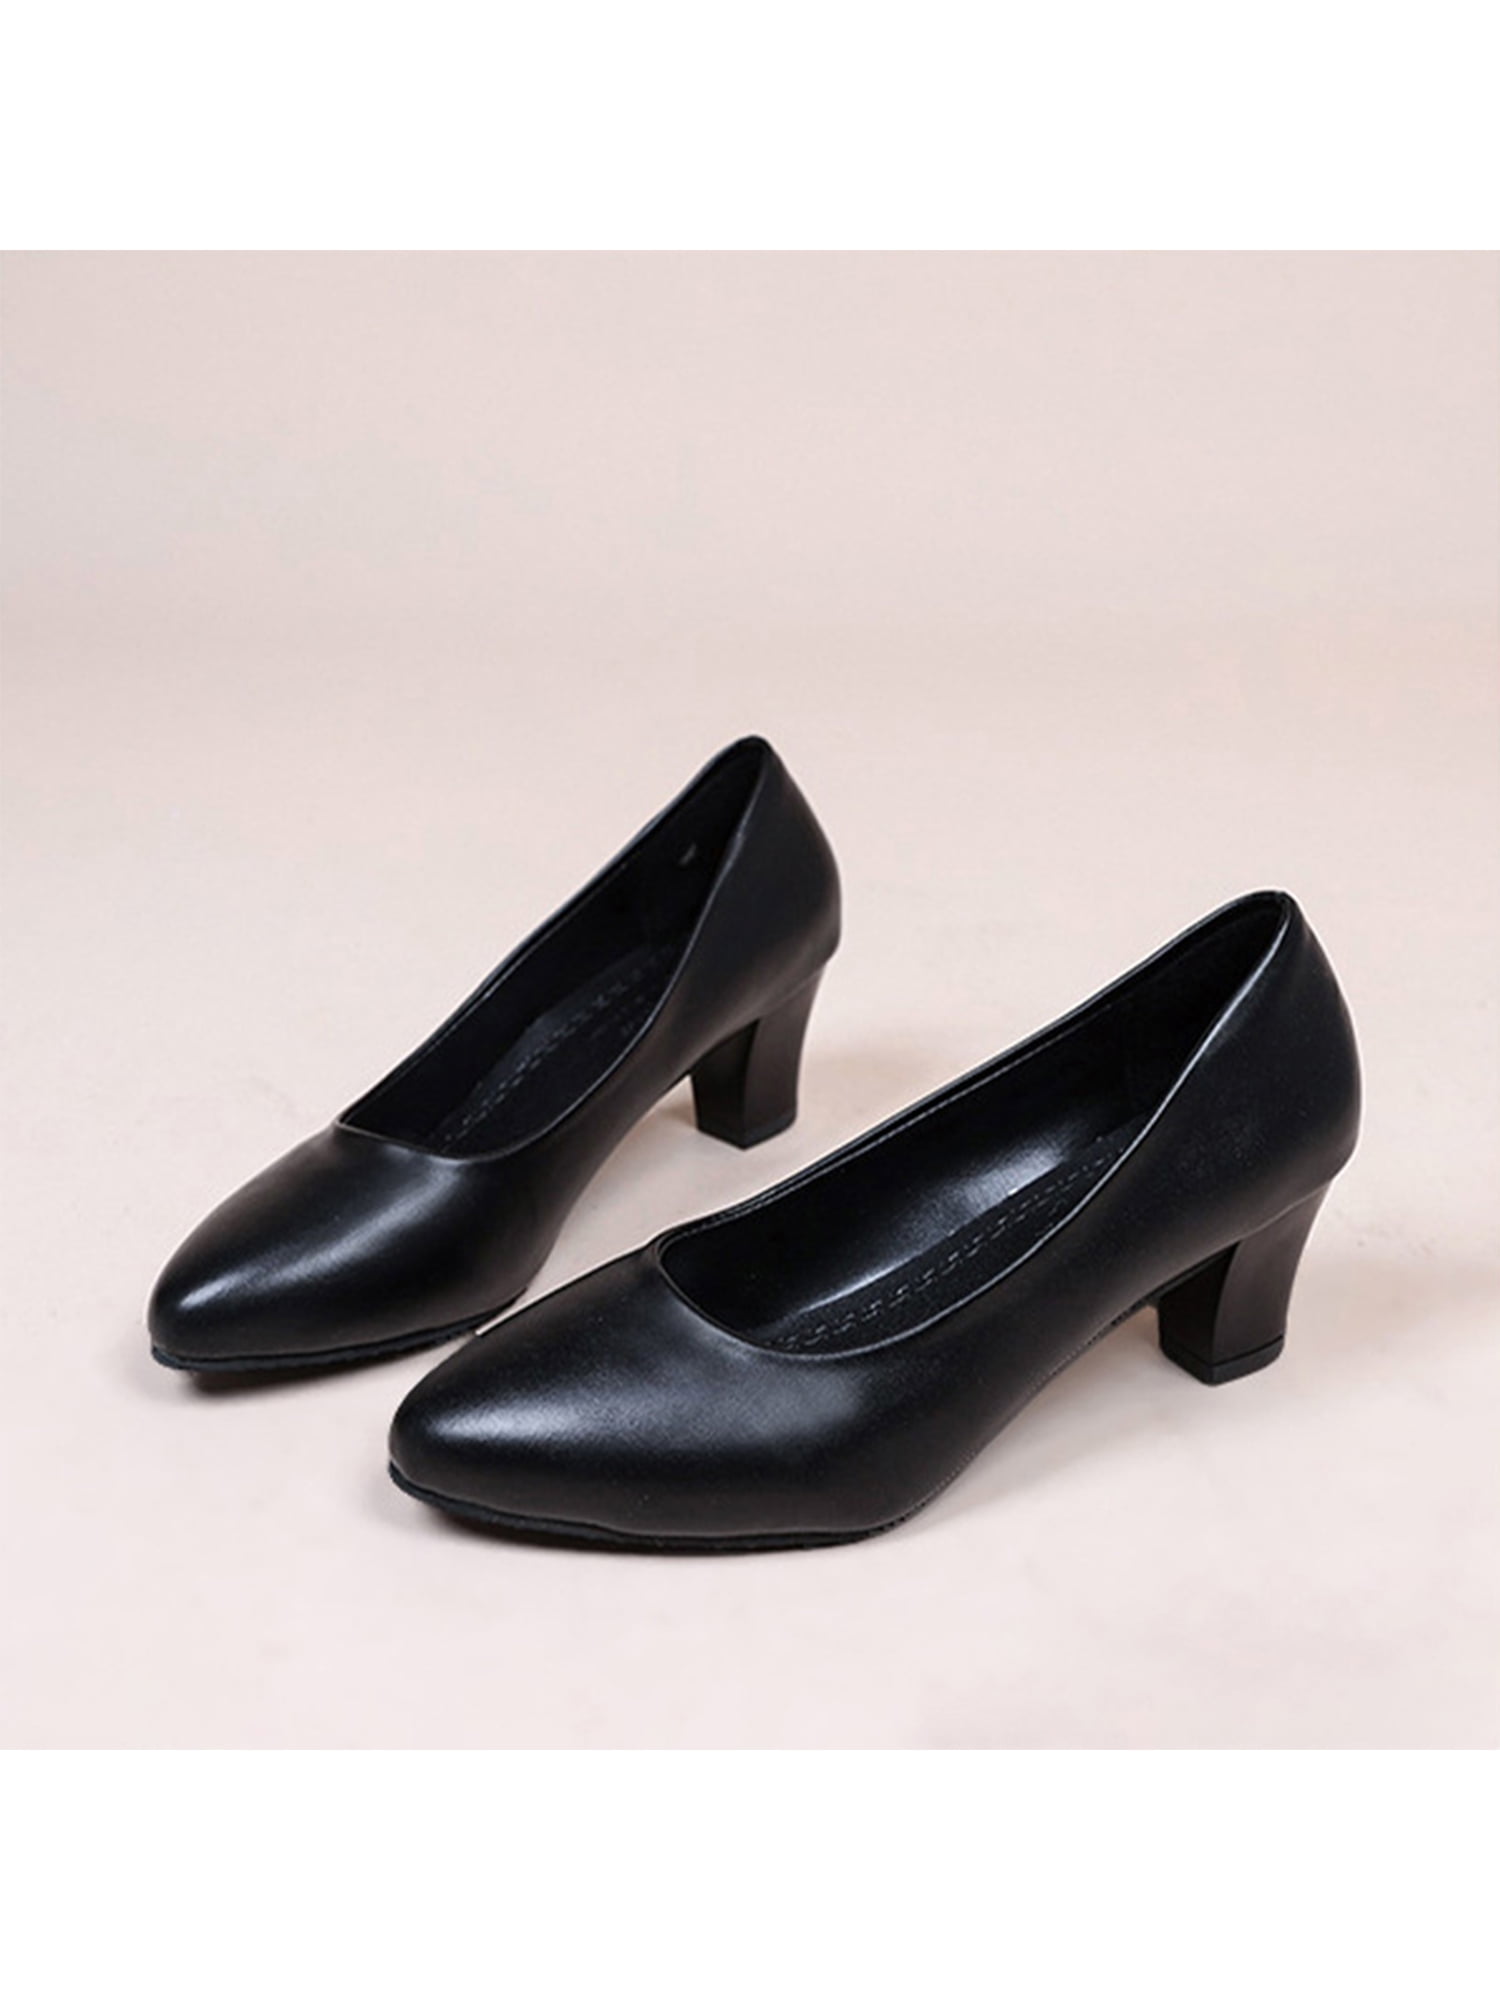 Marian Black Suede Low Heel Shoe - Ivory Lane